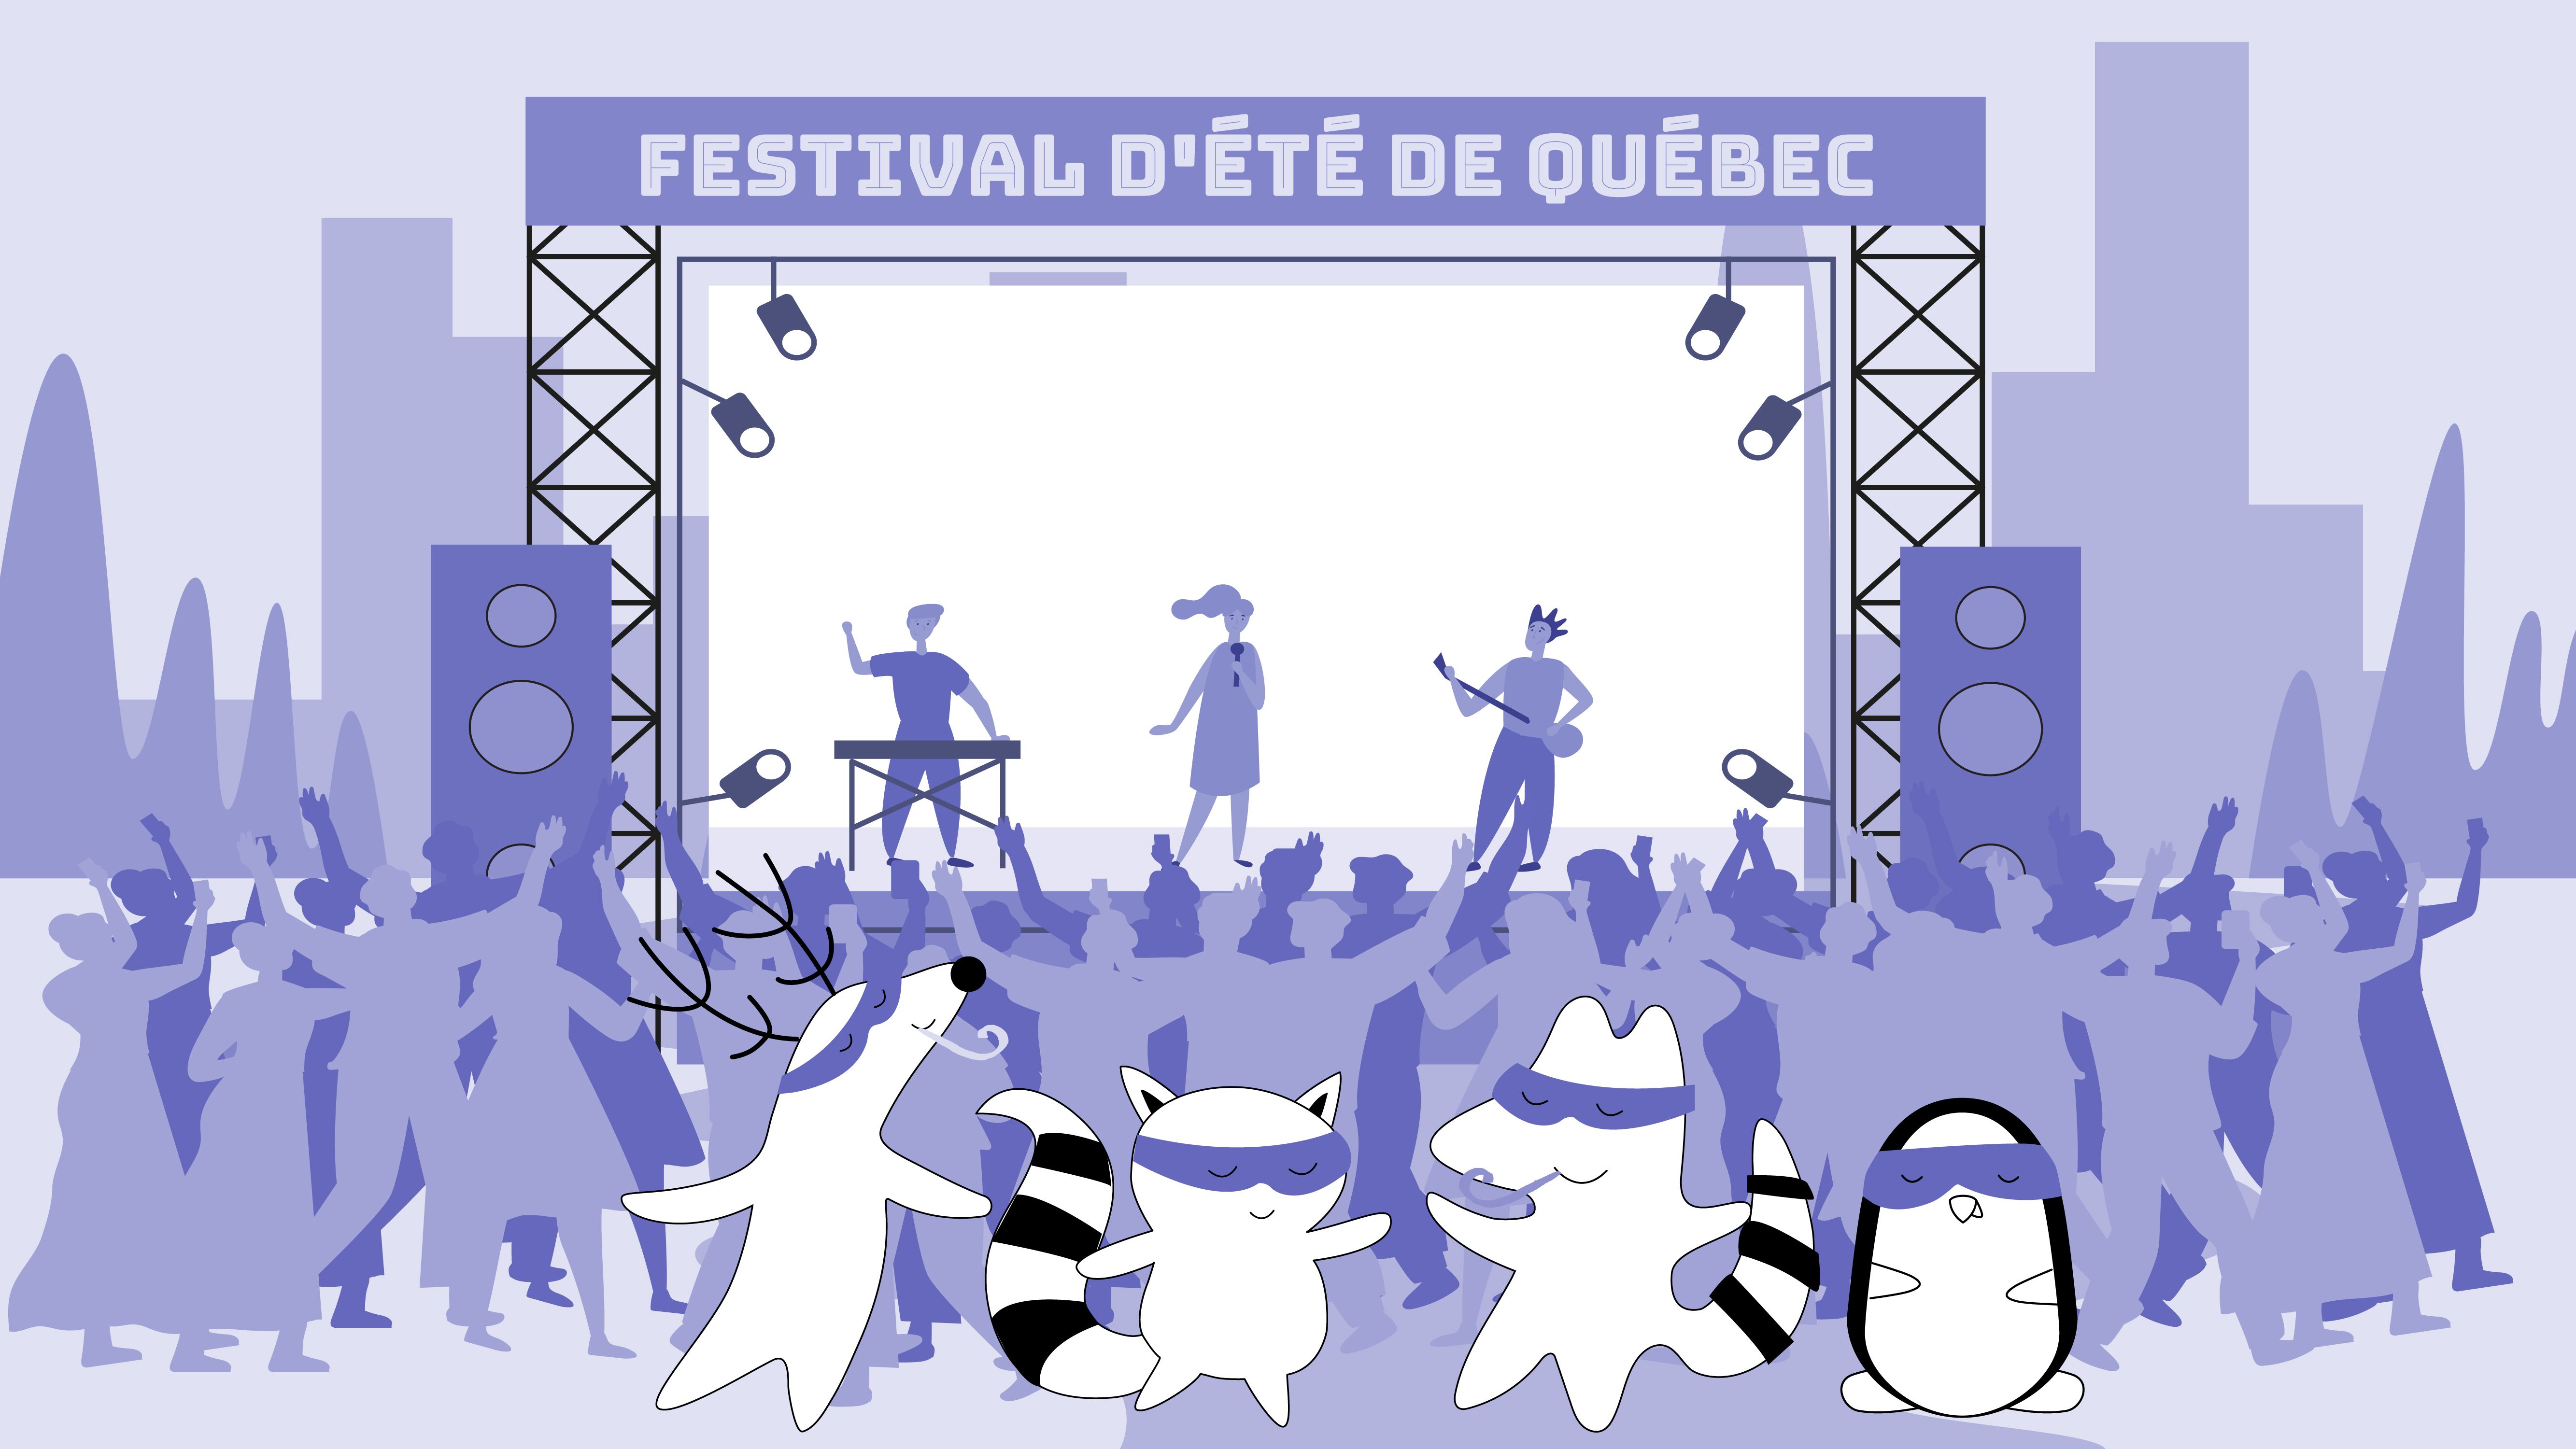  Soren, Iggy, Pocky, and Benji are dancing at the Festival d'été de Québec.